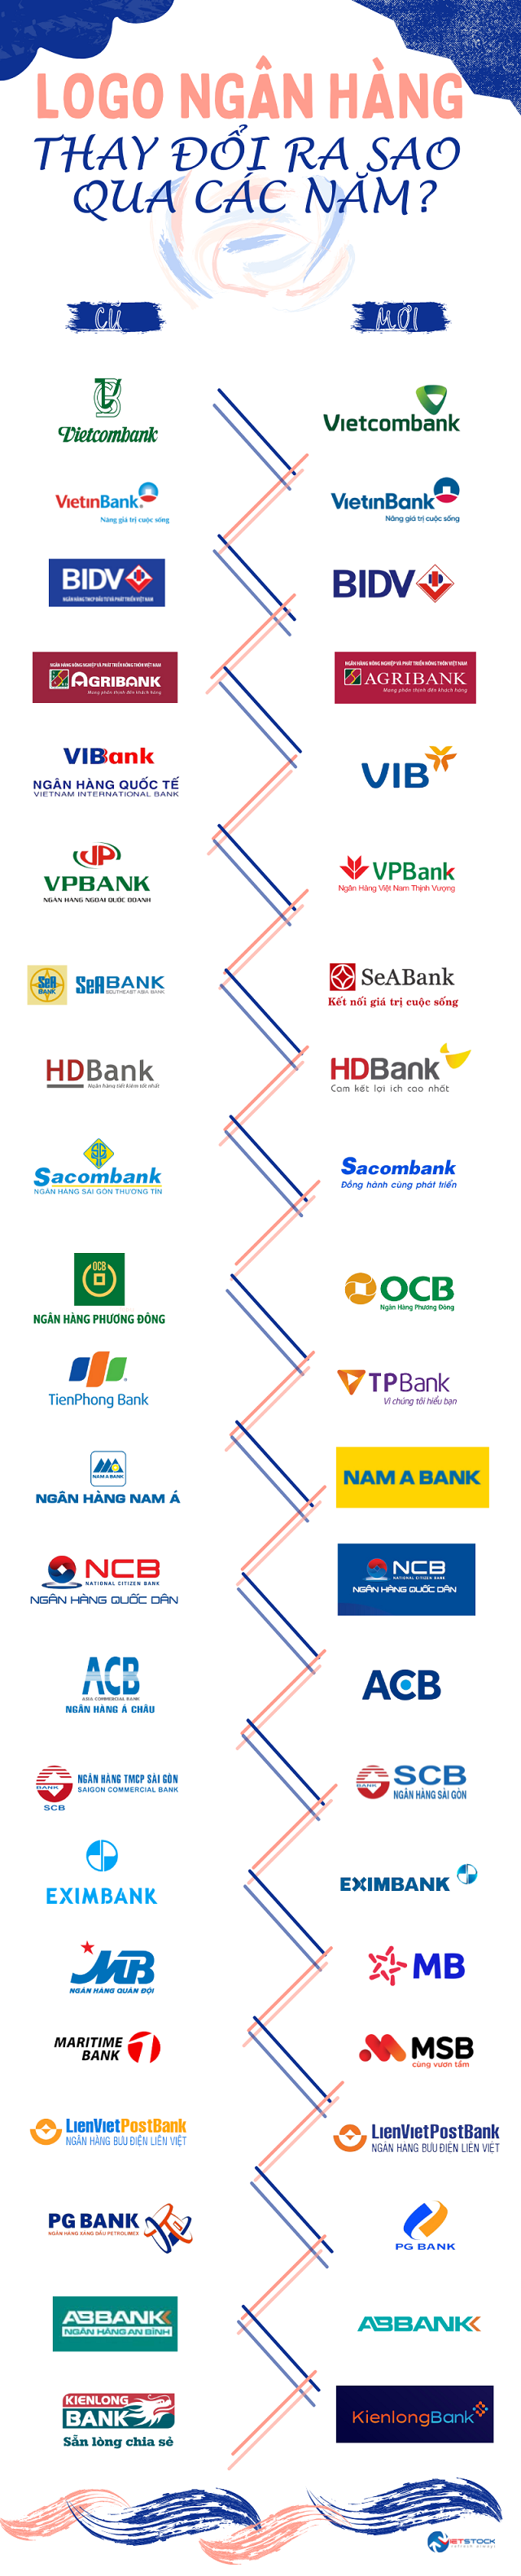 Infographics] Nhận diện thương hiệu ngân hàng thay đổi ra sao ...